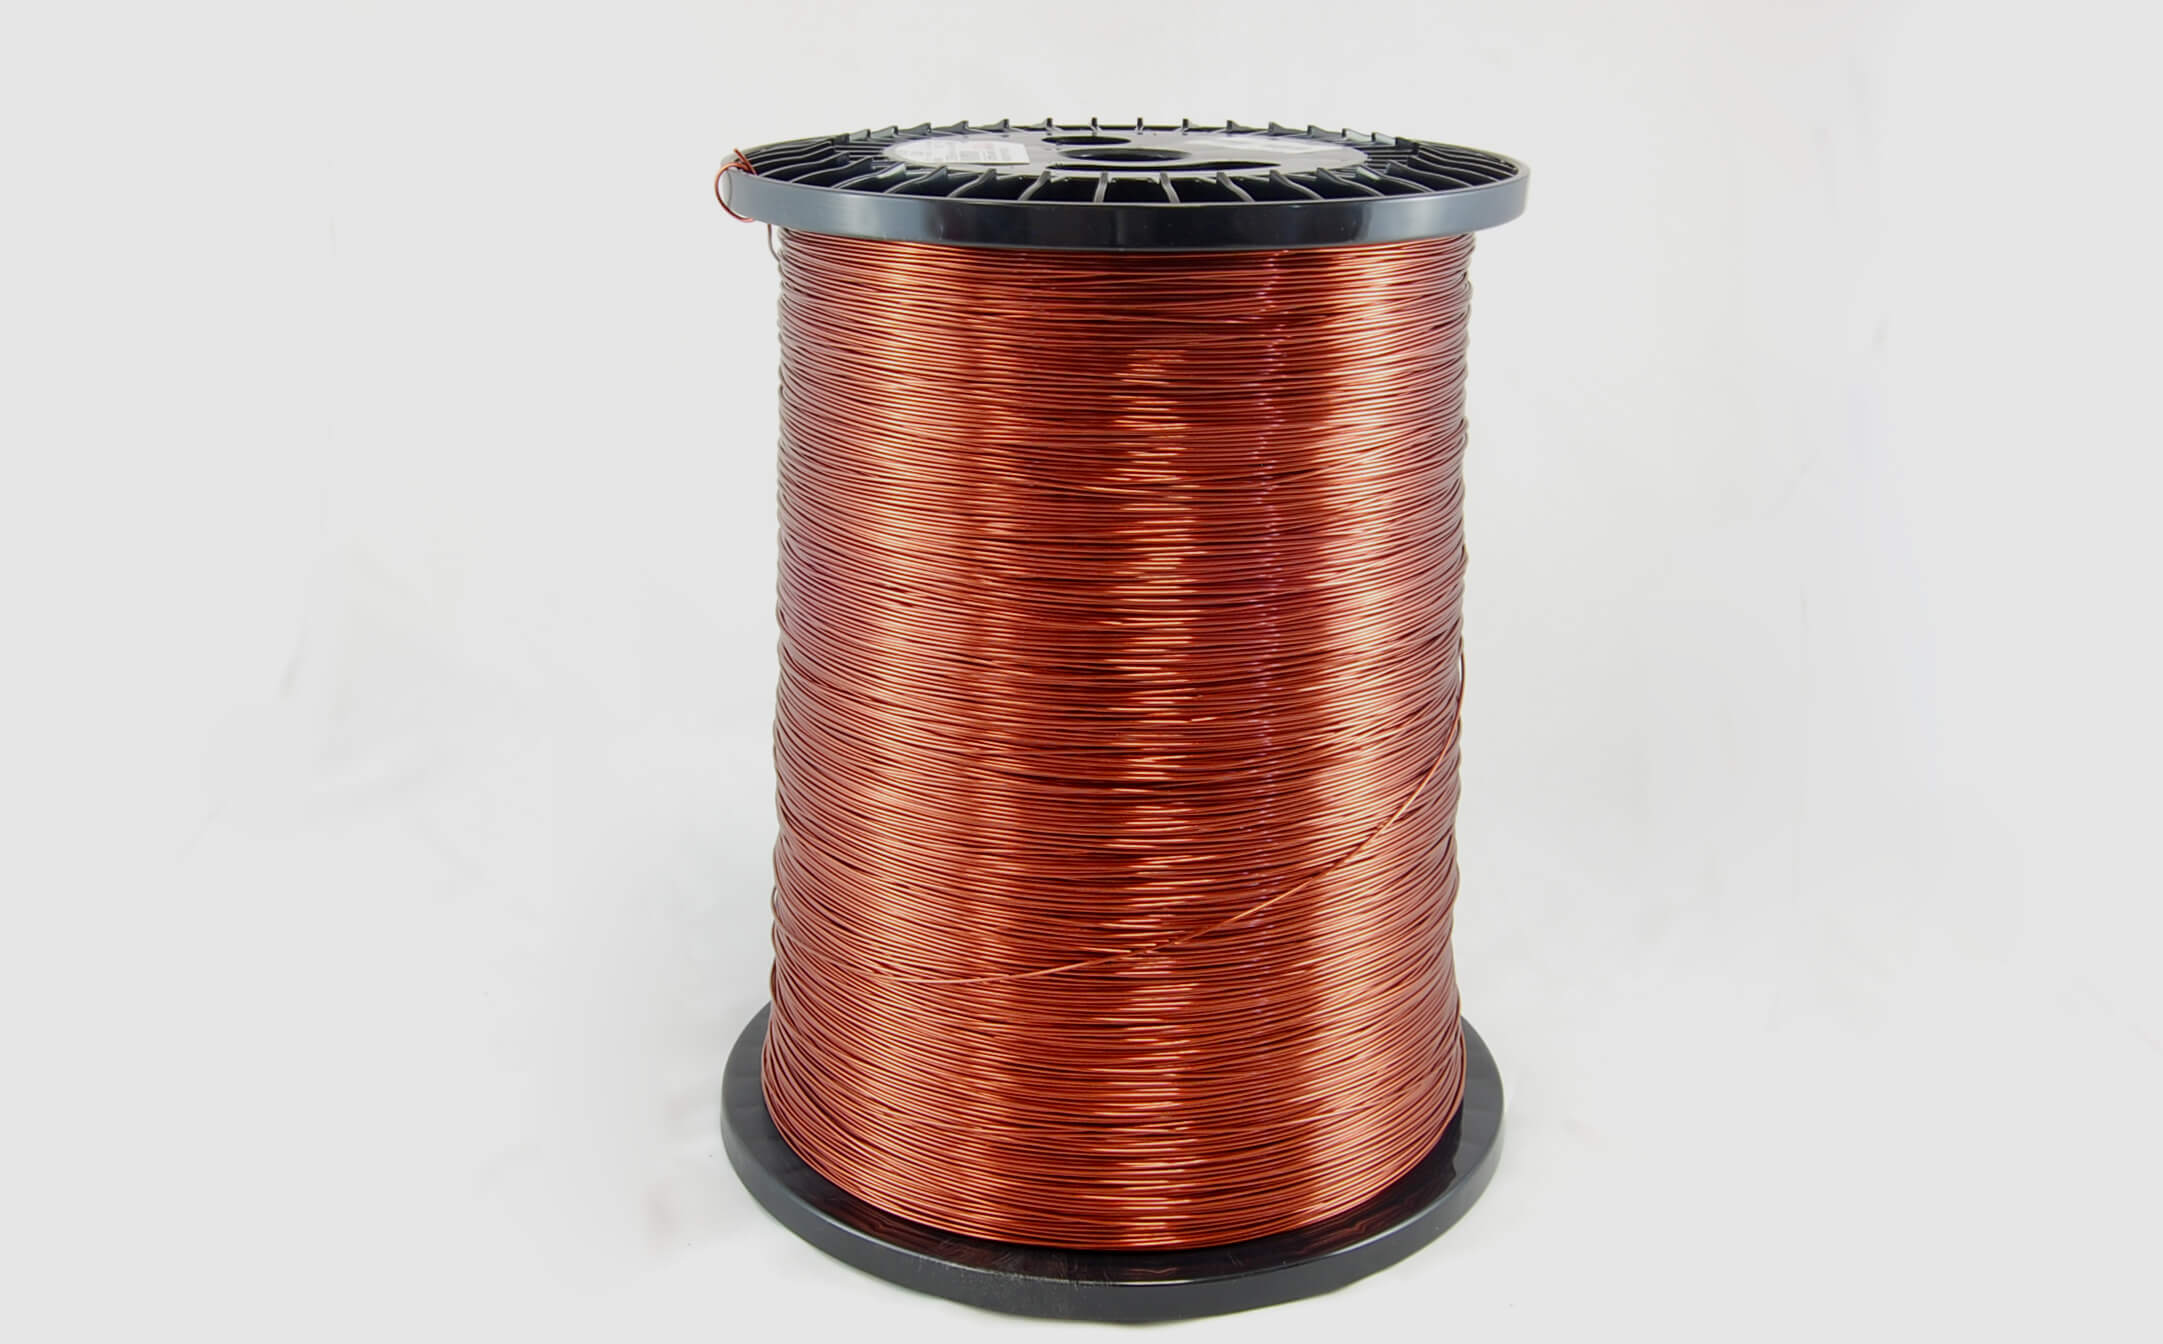 #18 Heavy Super Hyslik 200 Round HTAIH MW 35 Copper Magnet Wire 200°C, copper, 85 LB pail (average wght.)